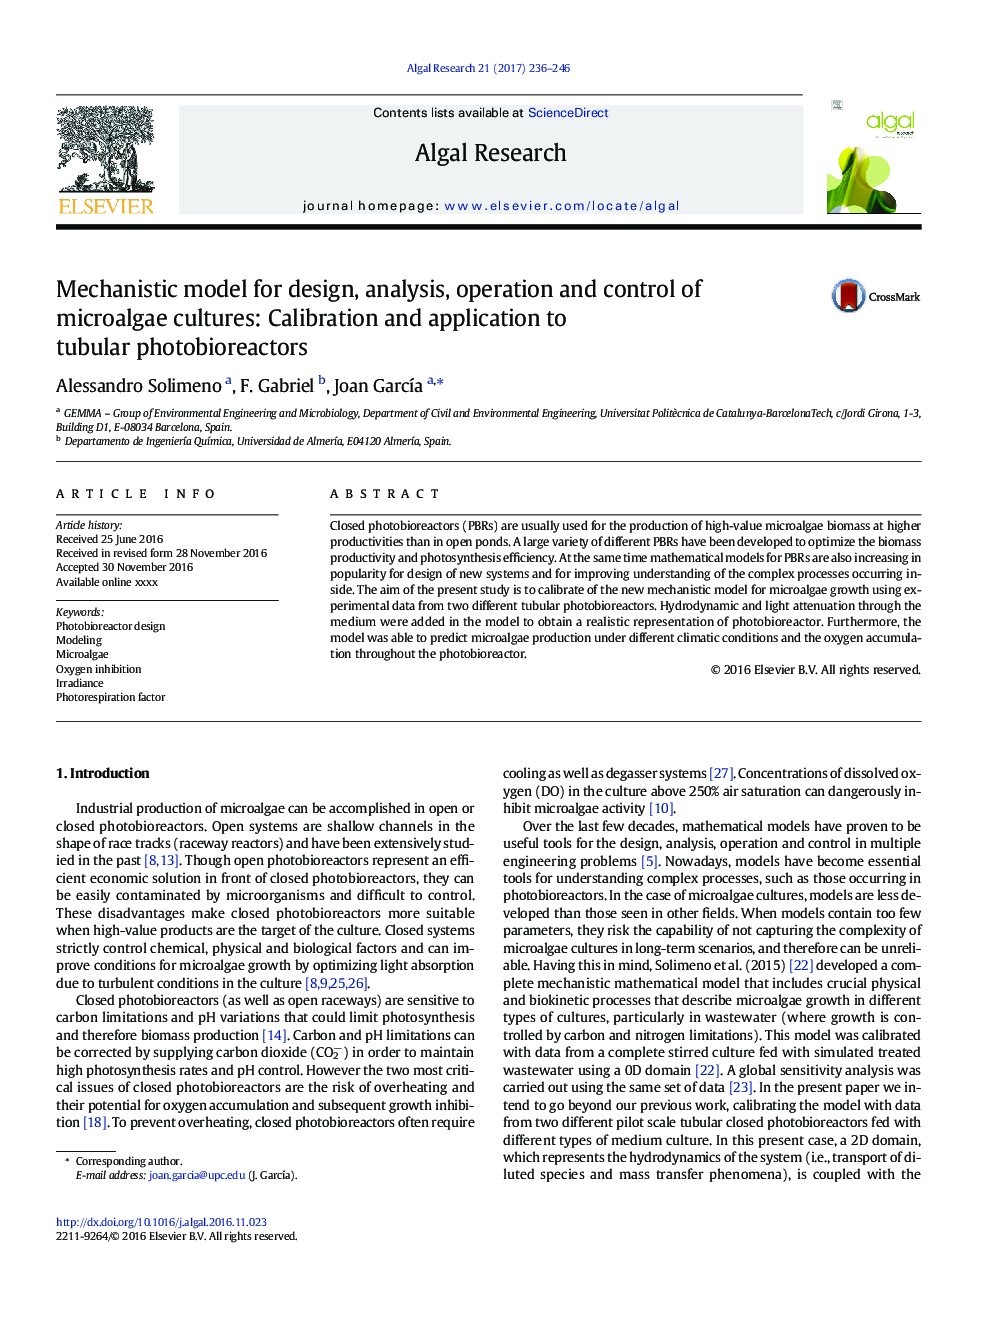 مدل مکانیستی برای طراحی، تجزیه و تحلیل، عمل و کنترل کشت میکروالاها: کالیبراسیون و کاربرد آن در فتو بیوراکتورهای لوله ای 